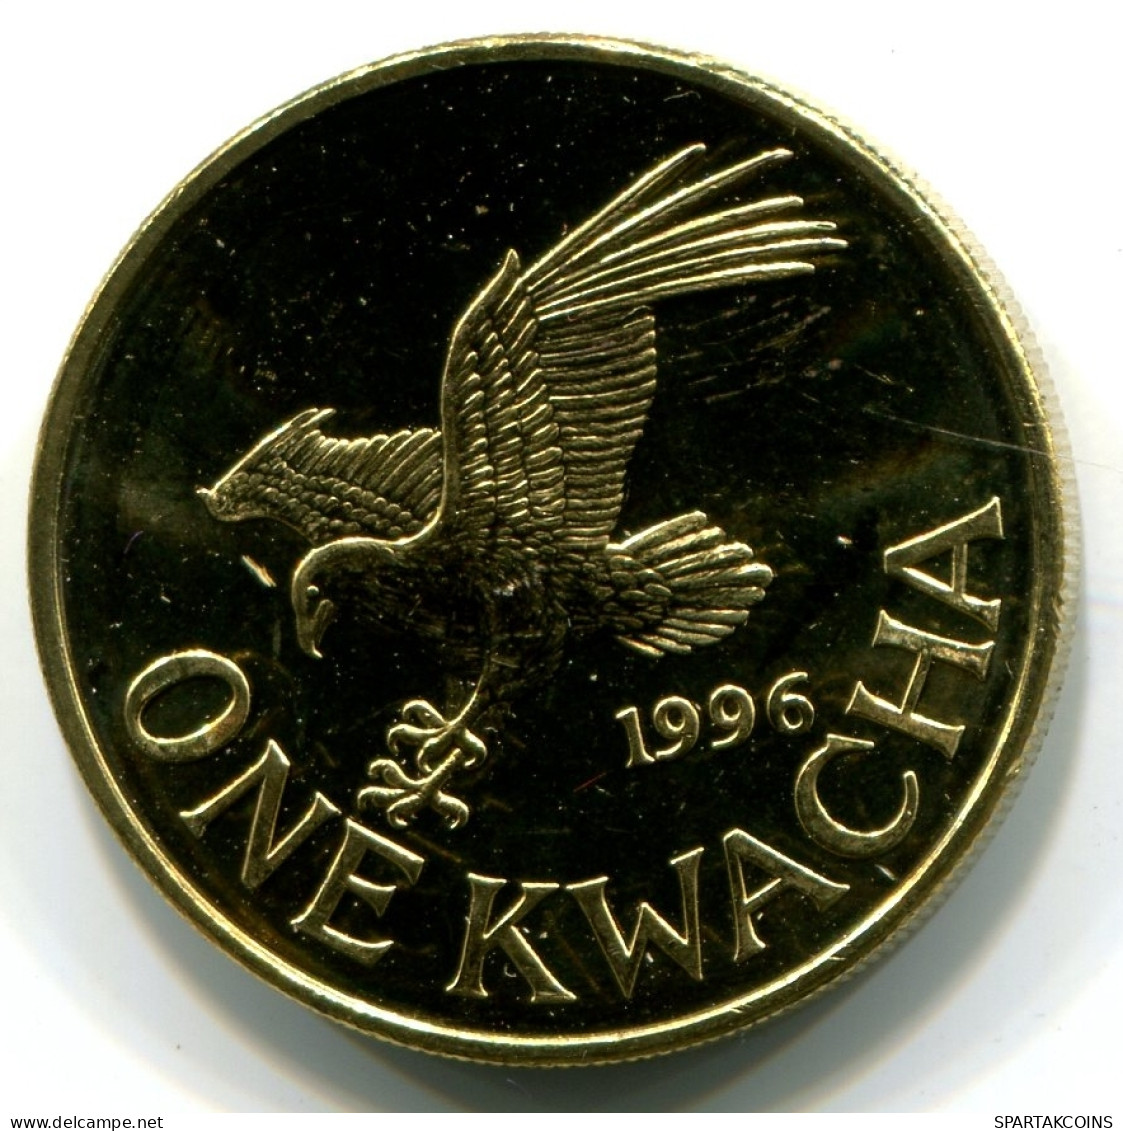 1 KWACHA 1996 MALAWI UNC Flying Eagle Coin #W11095.U - Malawi